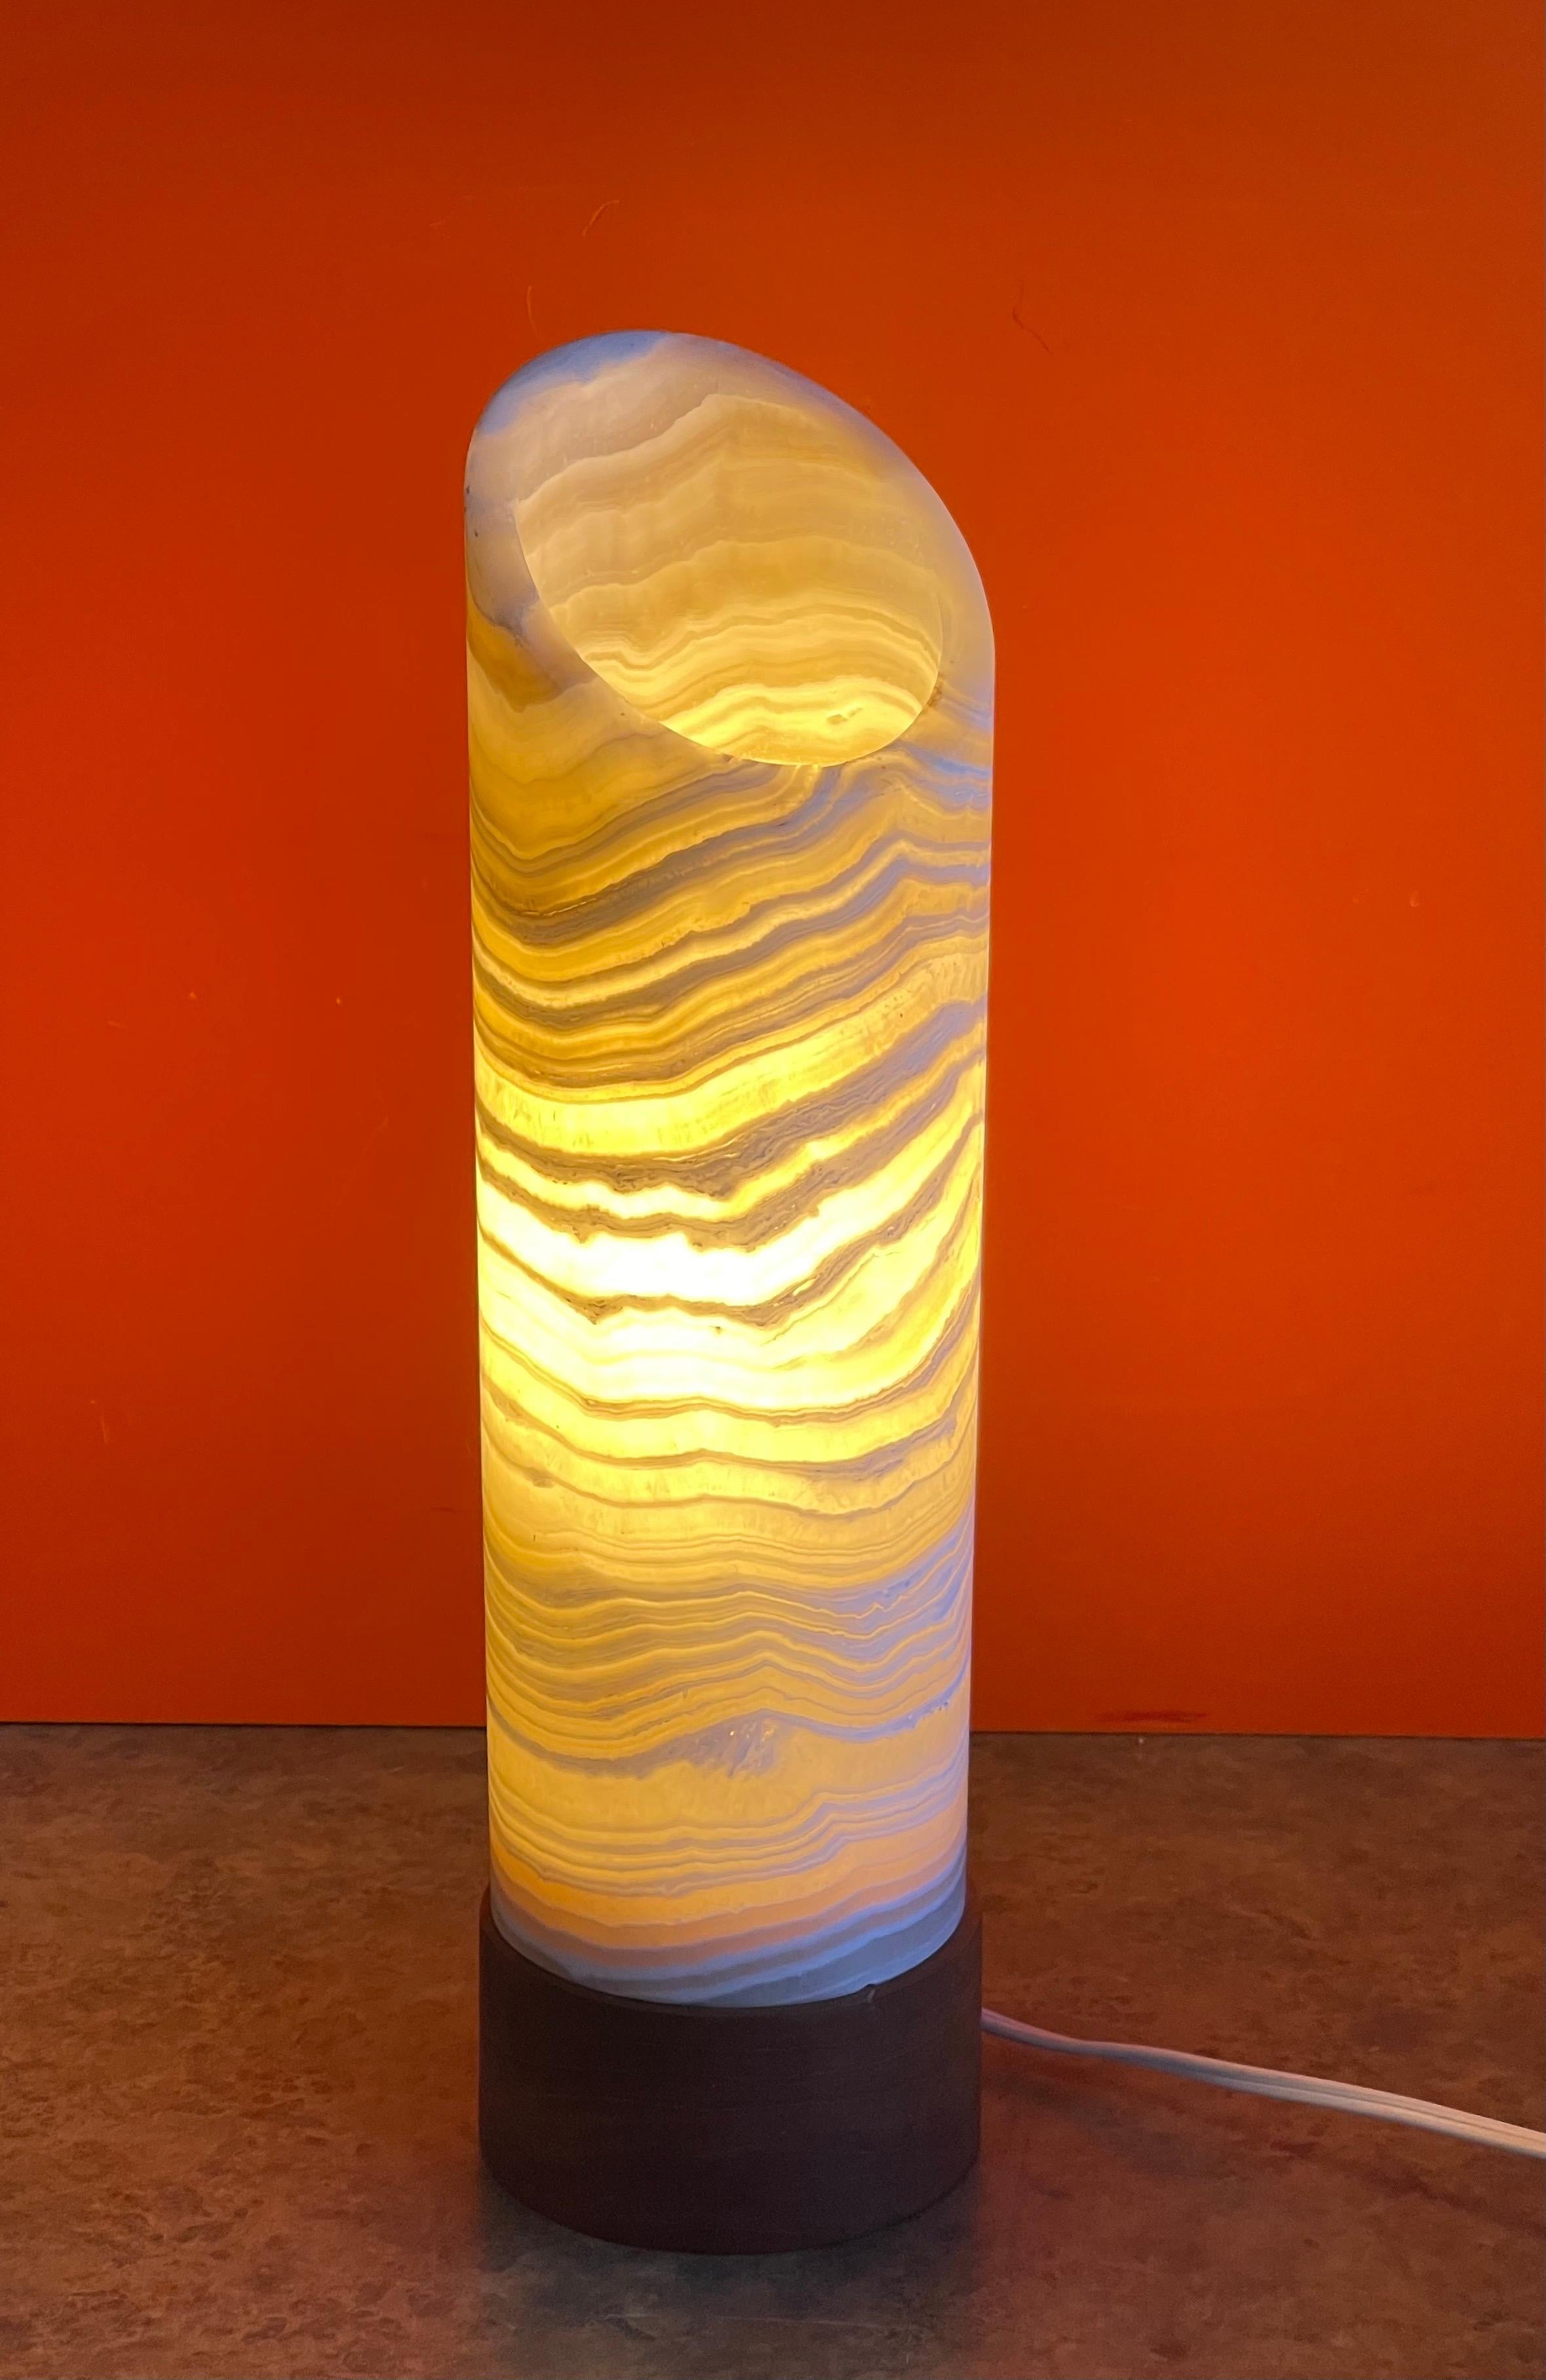 Remarquable lampe de table postmoderne en travertin et teck, datant des années 1980. La lampe est en très bon état vintage et mesure 4 